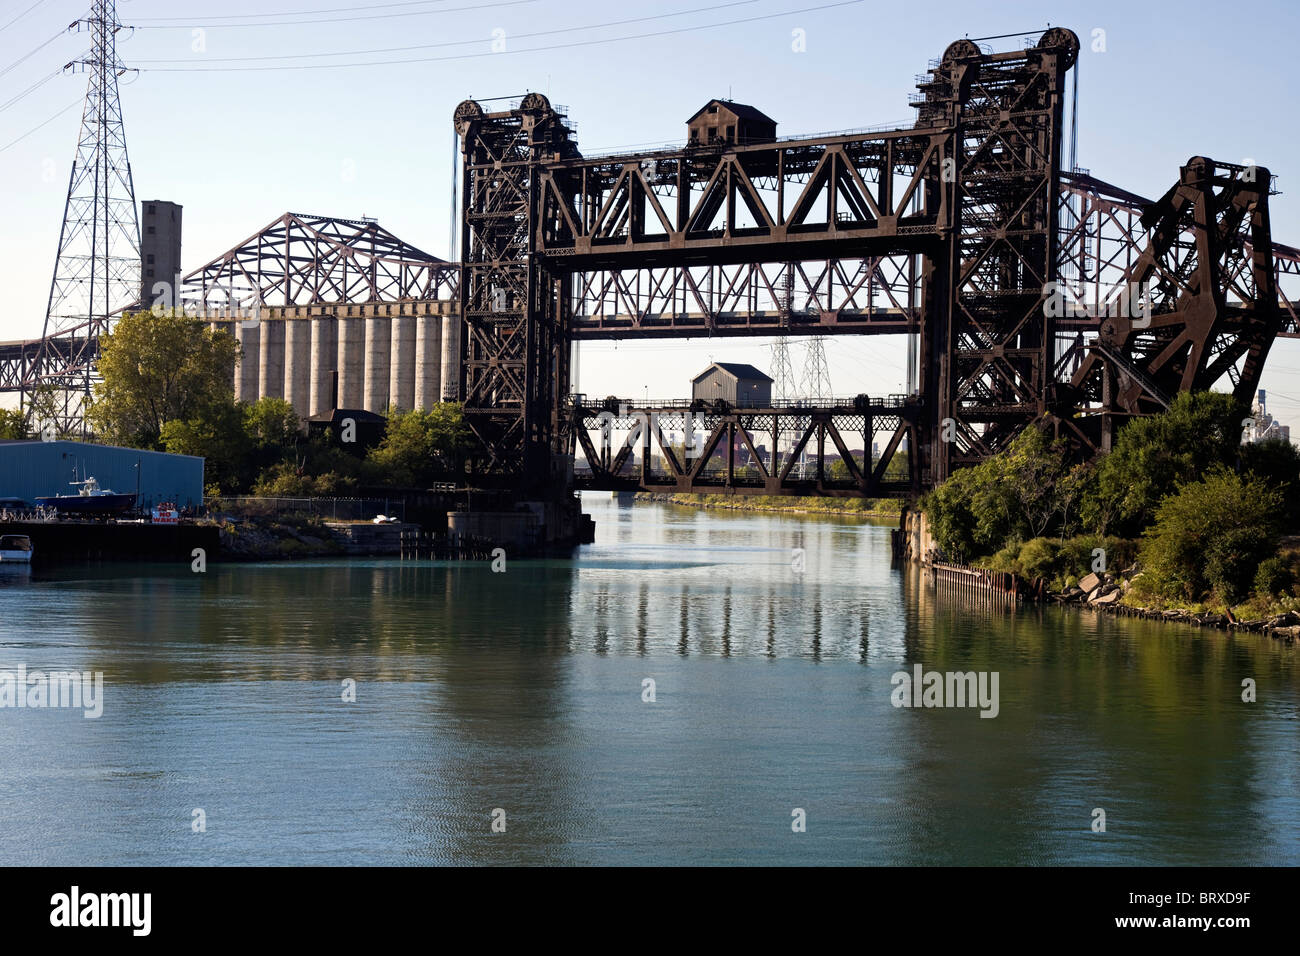 Ponts - zone industrielle - Côté Sud de Chicago. Skyway Bridge tout au fond. Banque D'Images